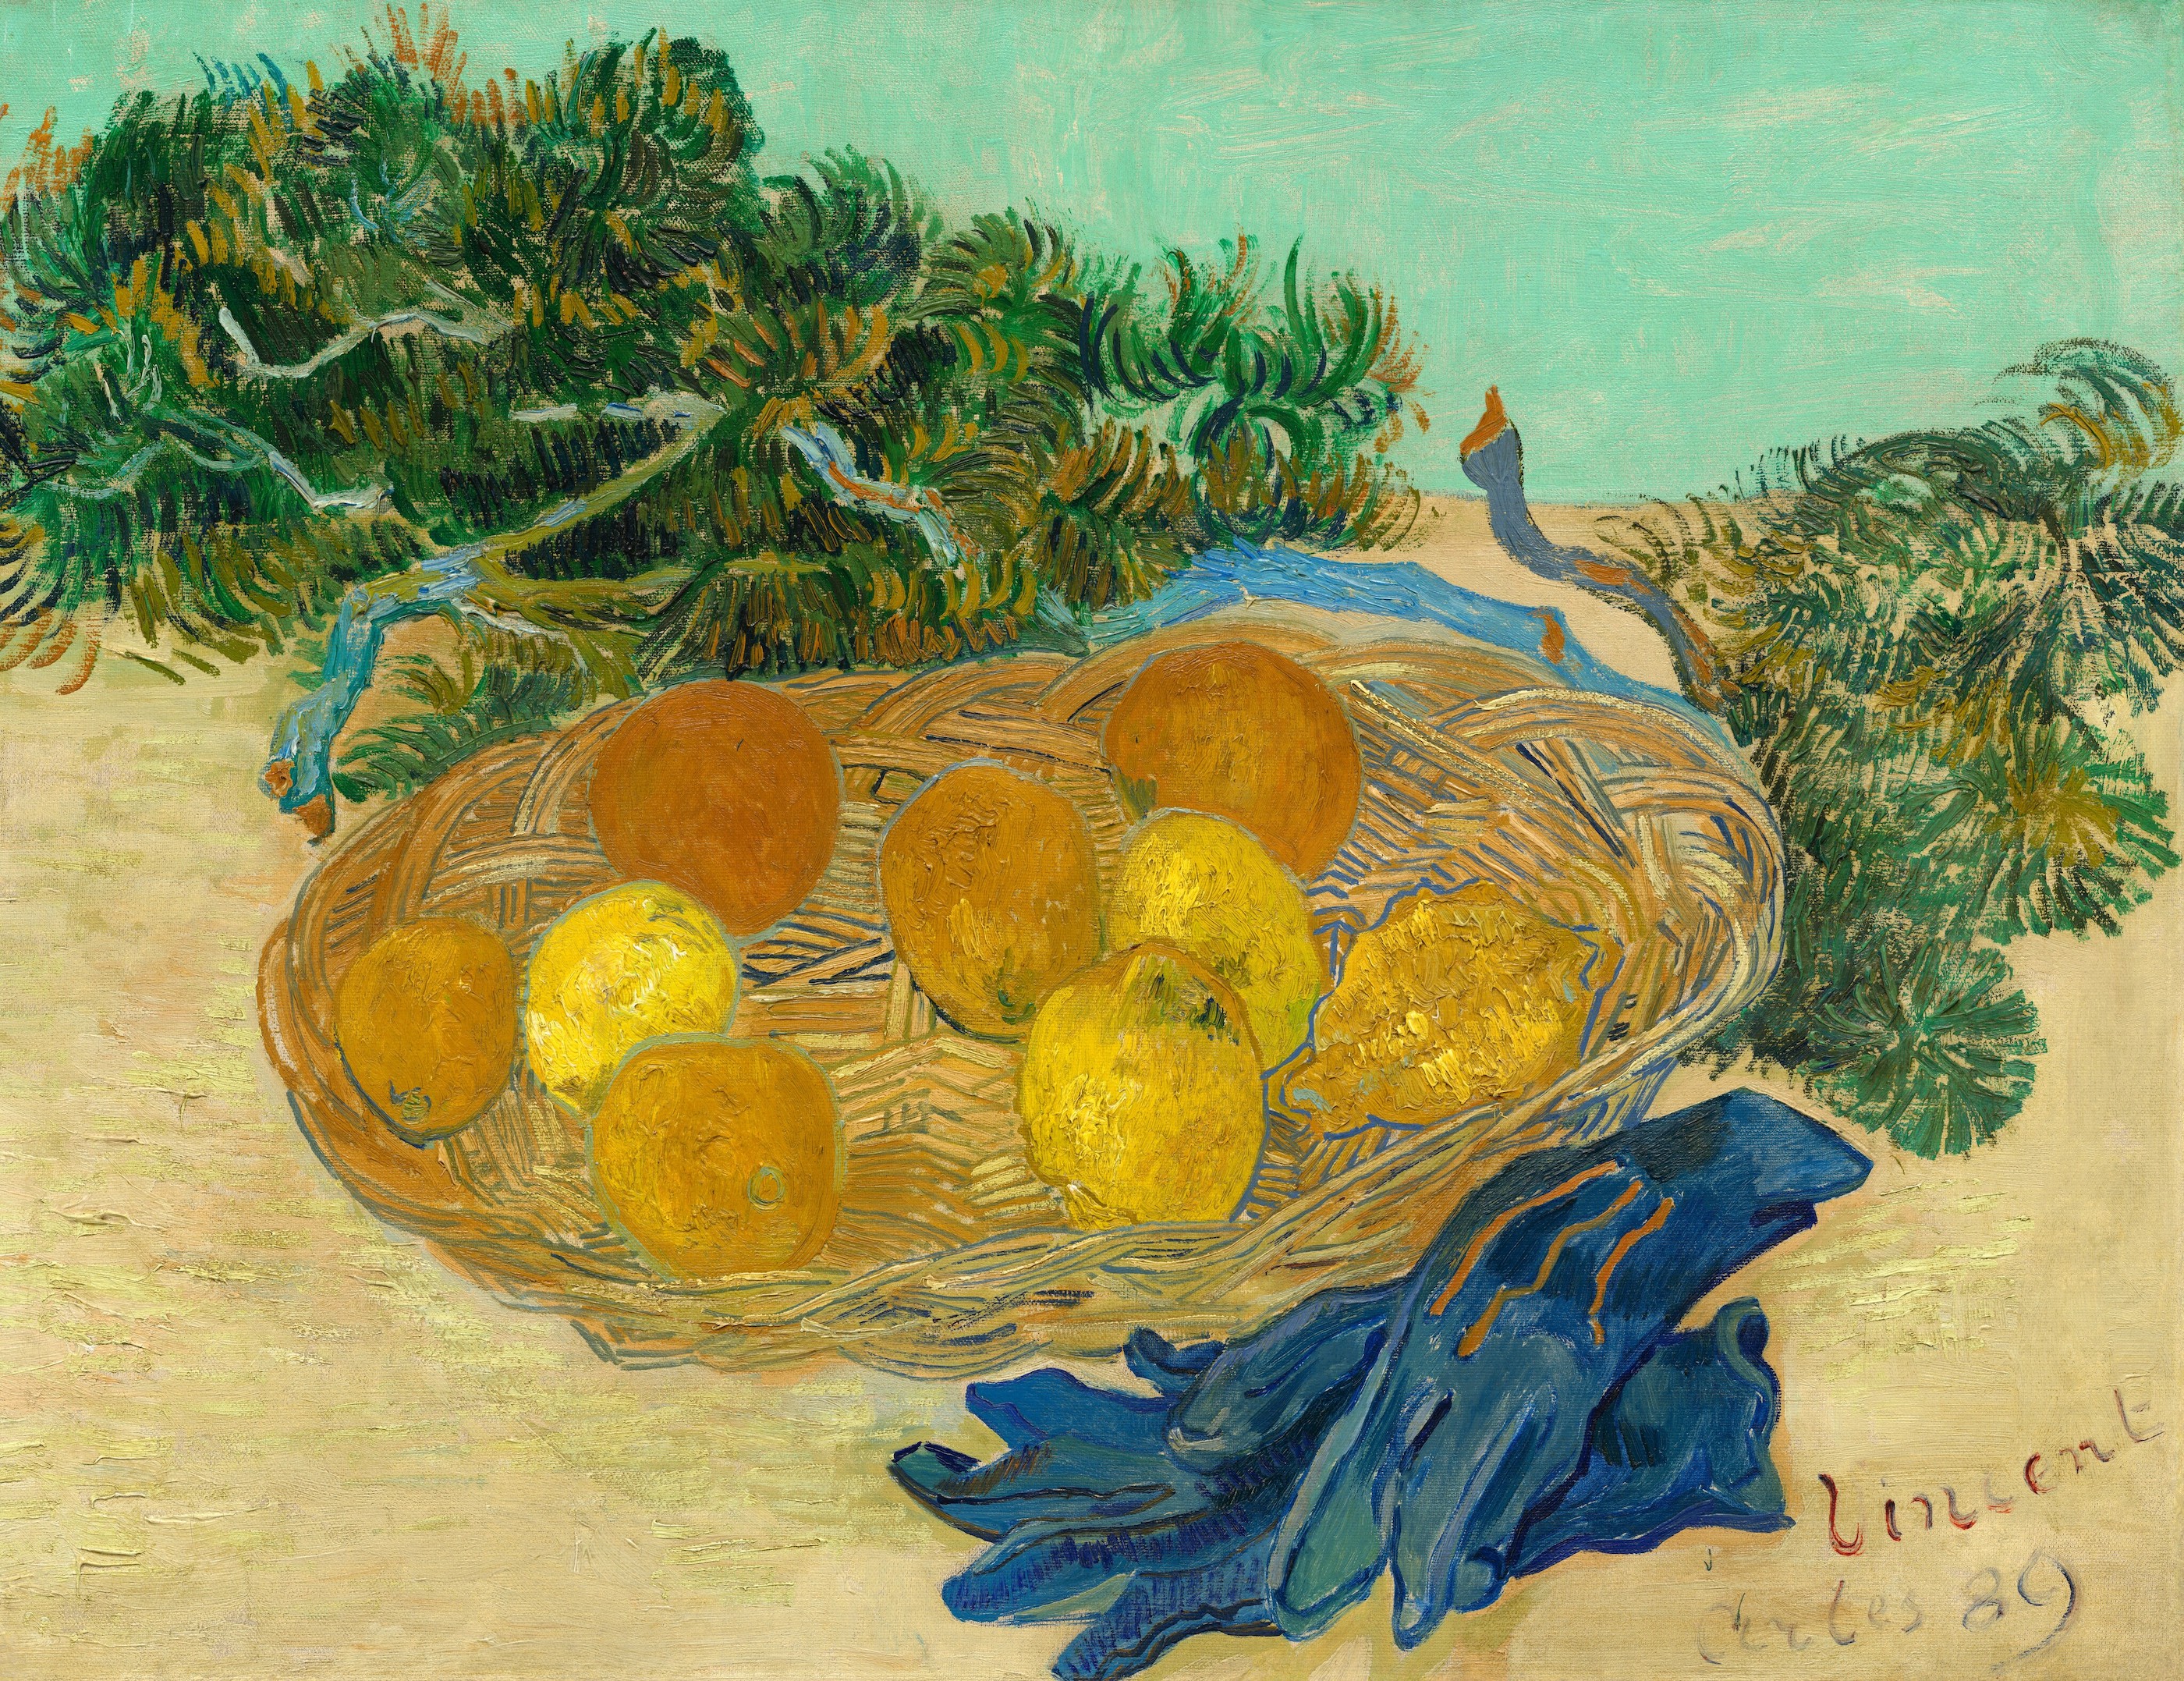 Stilleben av apelsiner och citroner med blå handskar by Vincent van Gogh - 1889 - 48 × 62 cm 